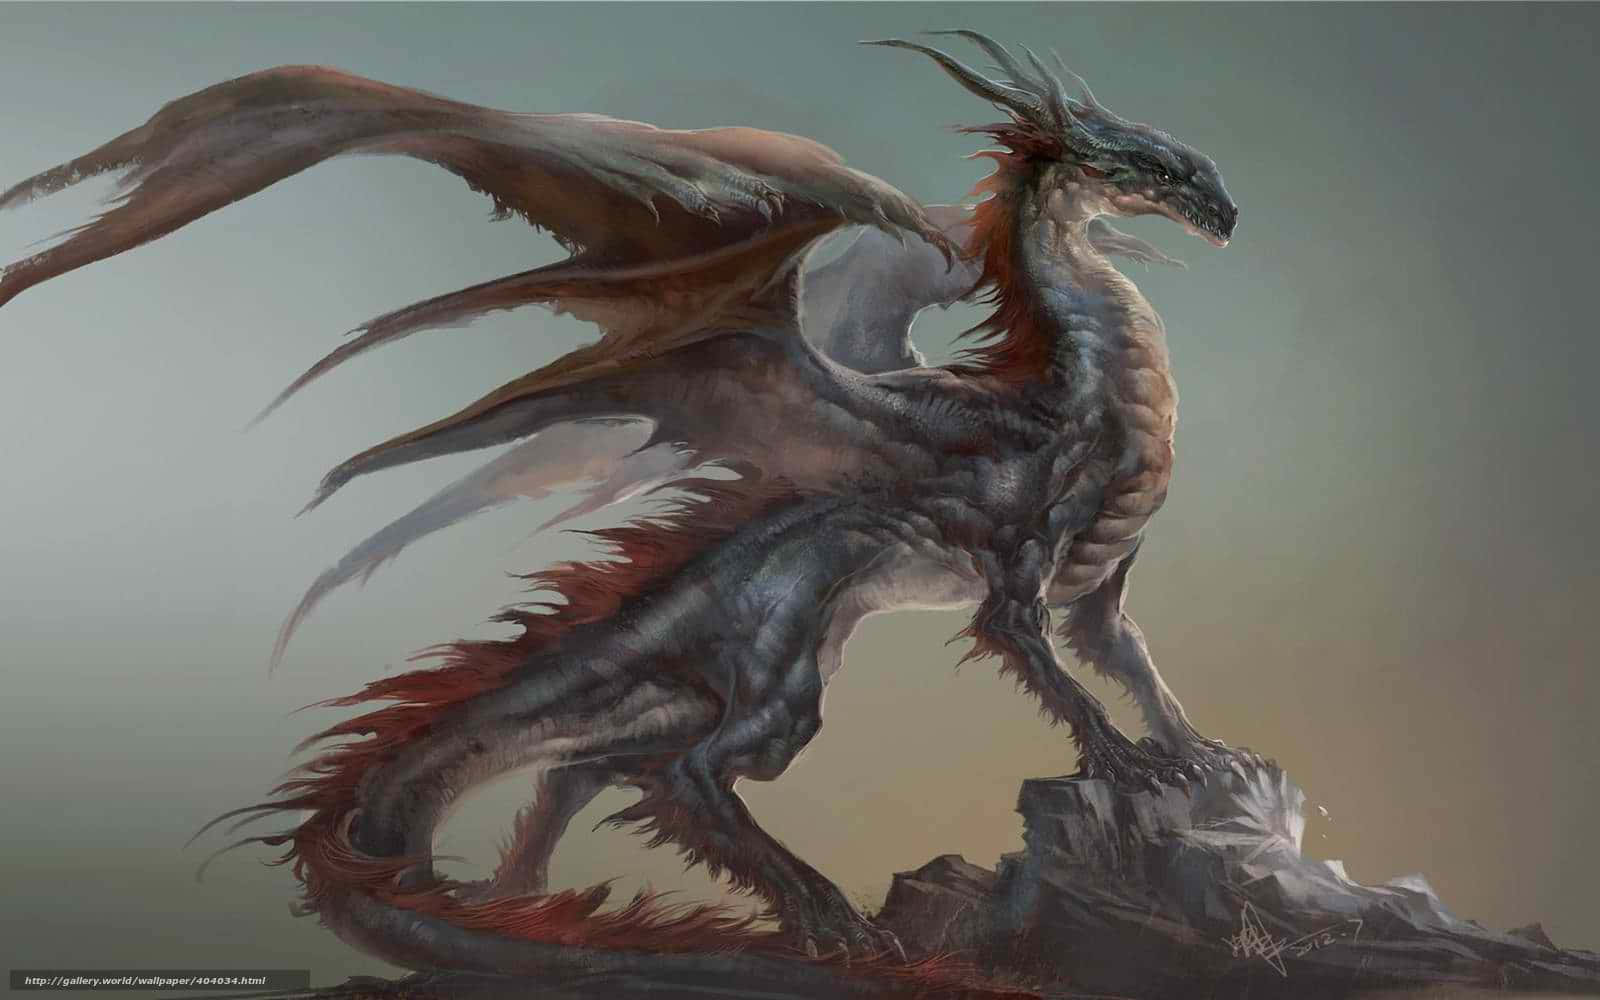 "A majestic dragon profile"